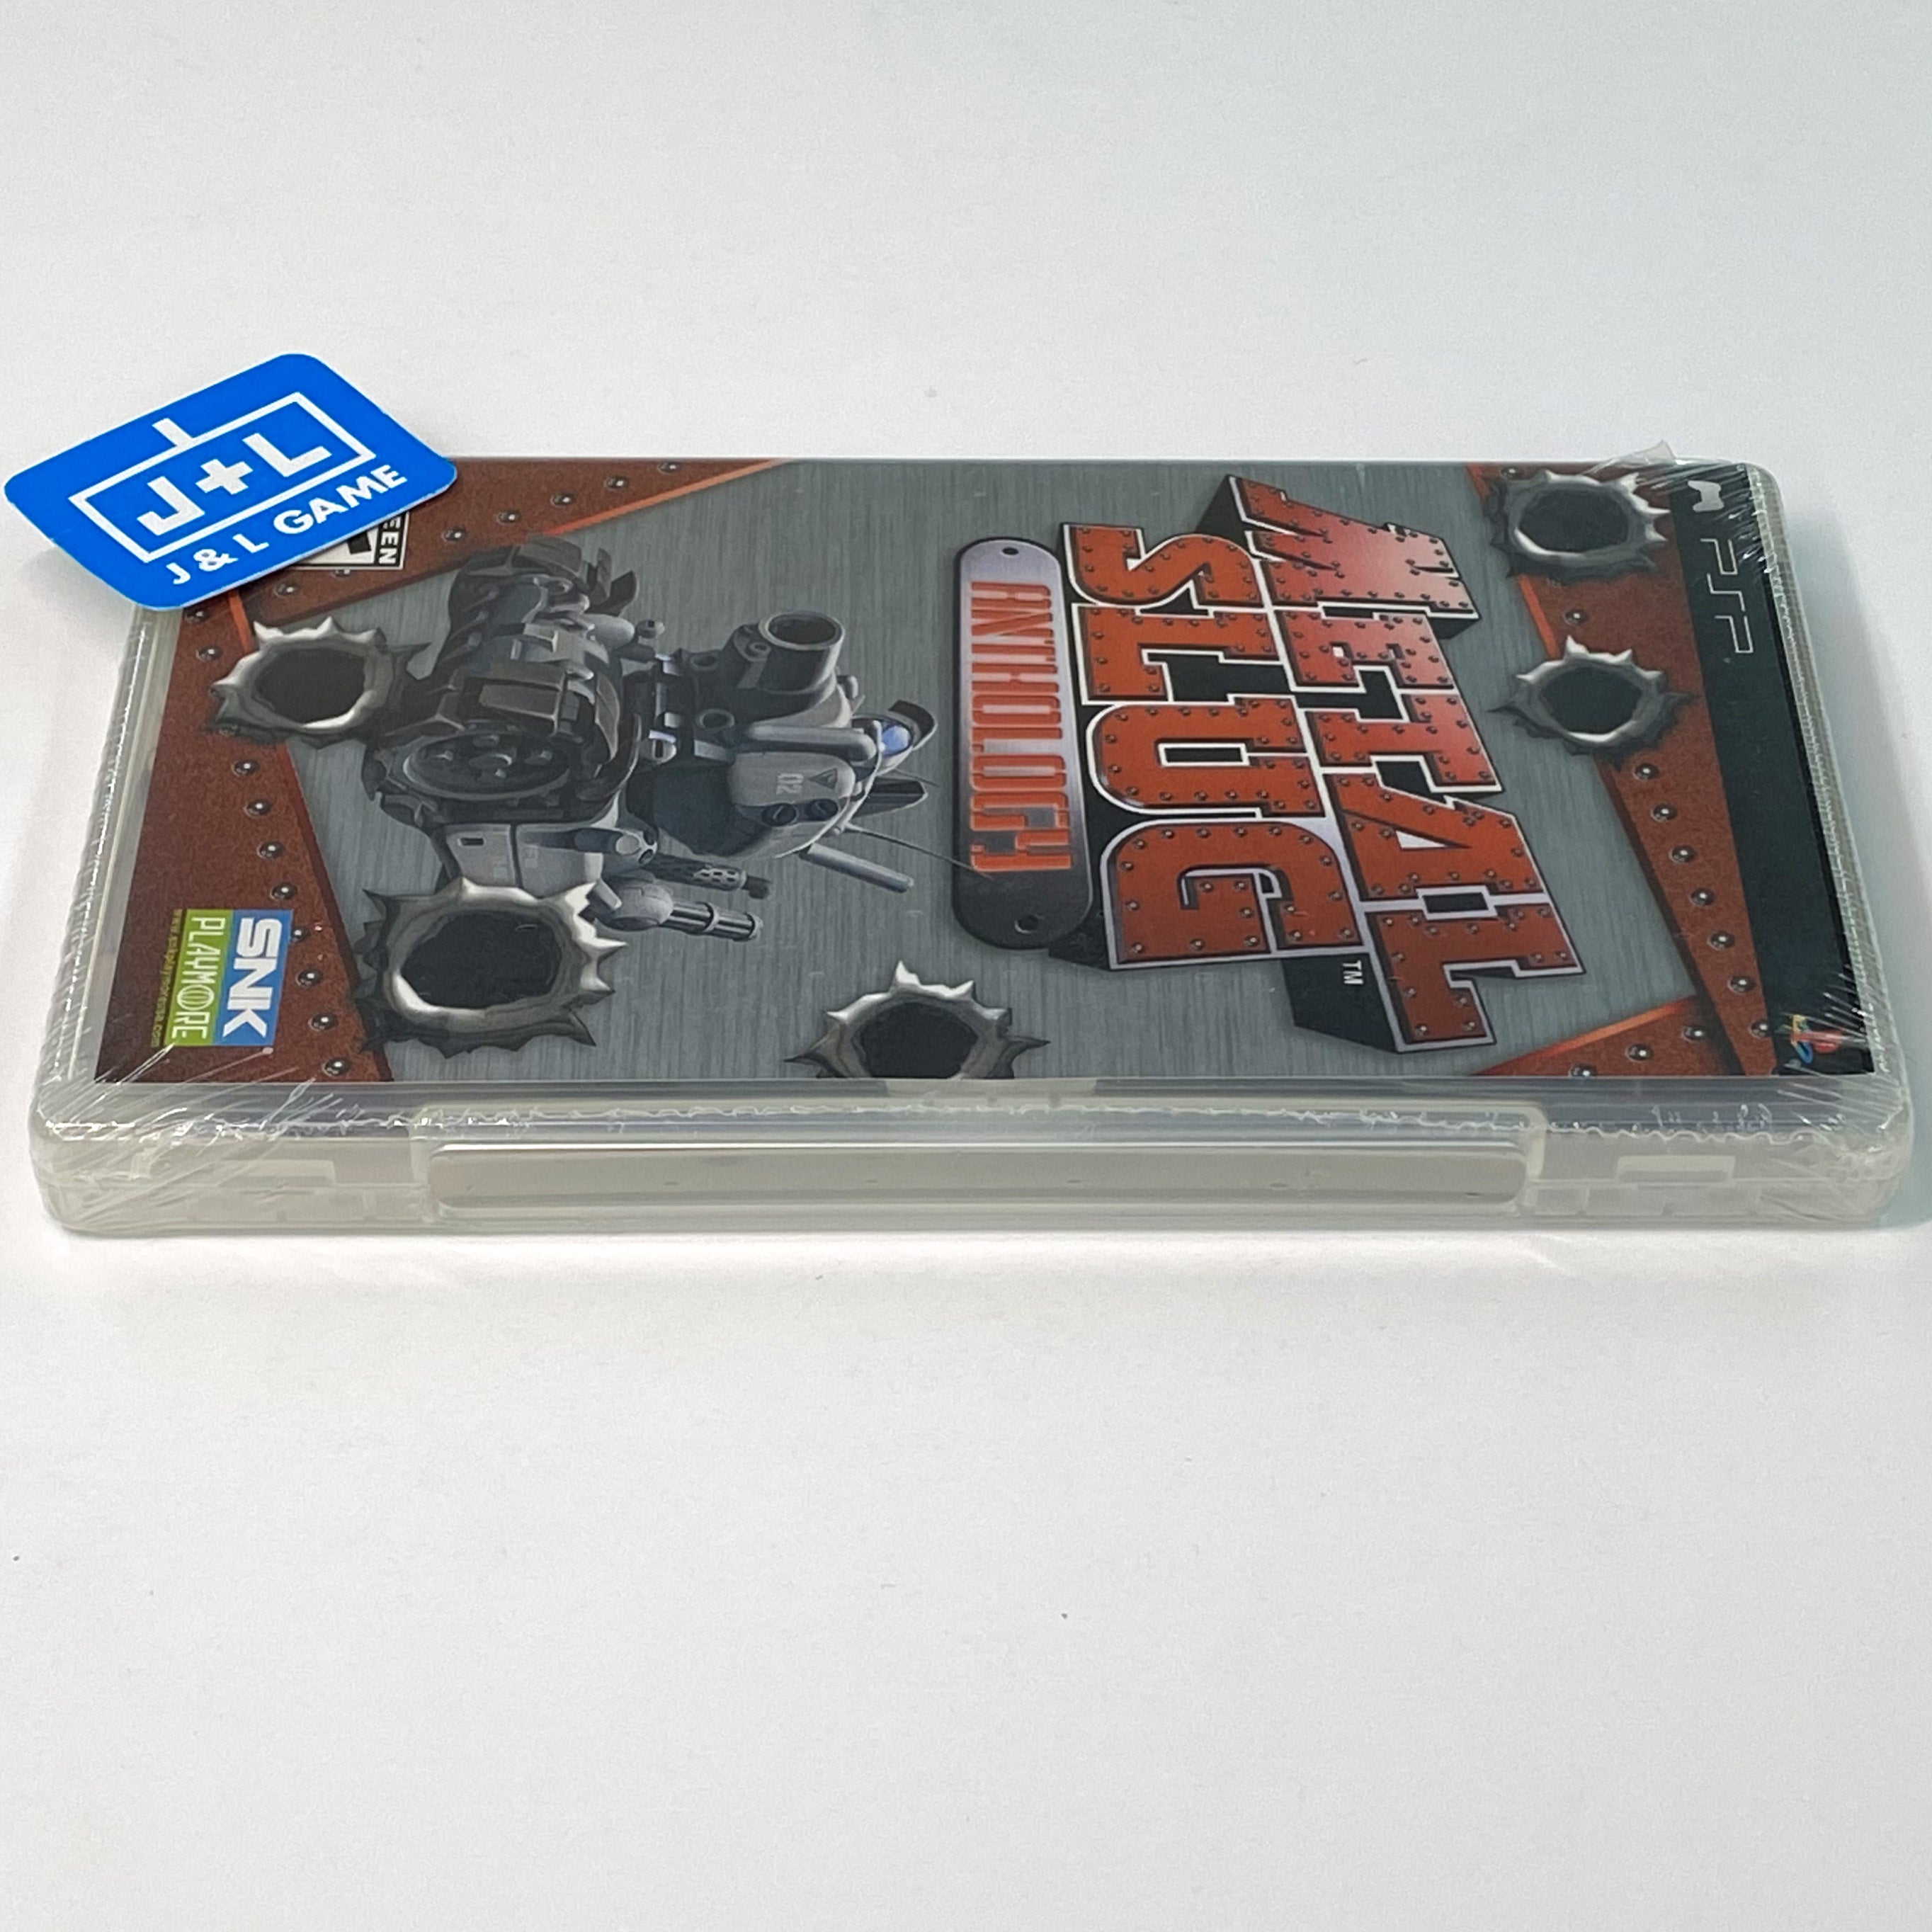 Metal Slug Anthology - Sony PSP Video Games SNK   